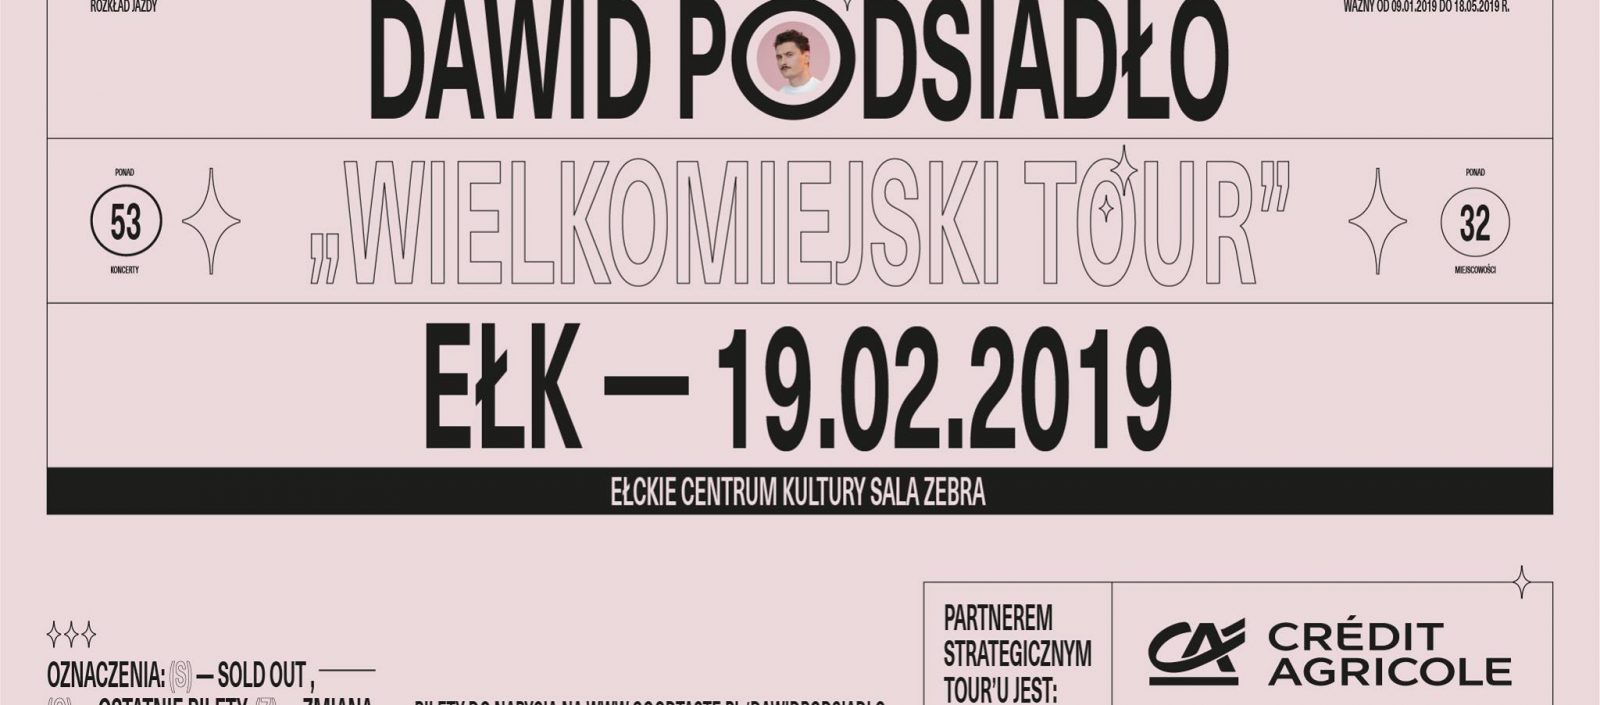 Wielkomiejski Tour • Ełk Dawid Podsiadło